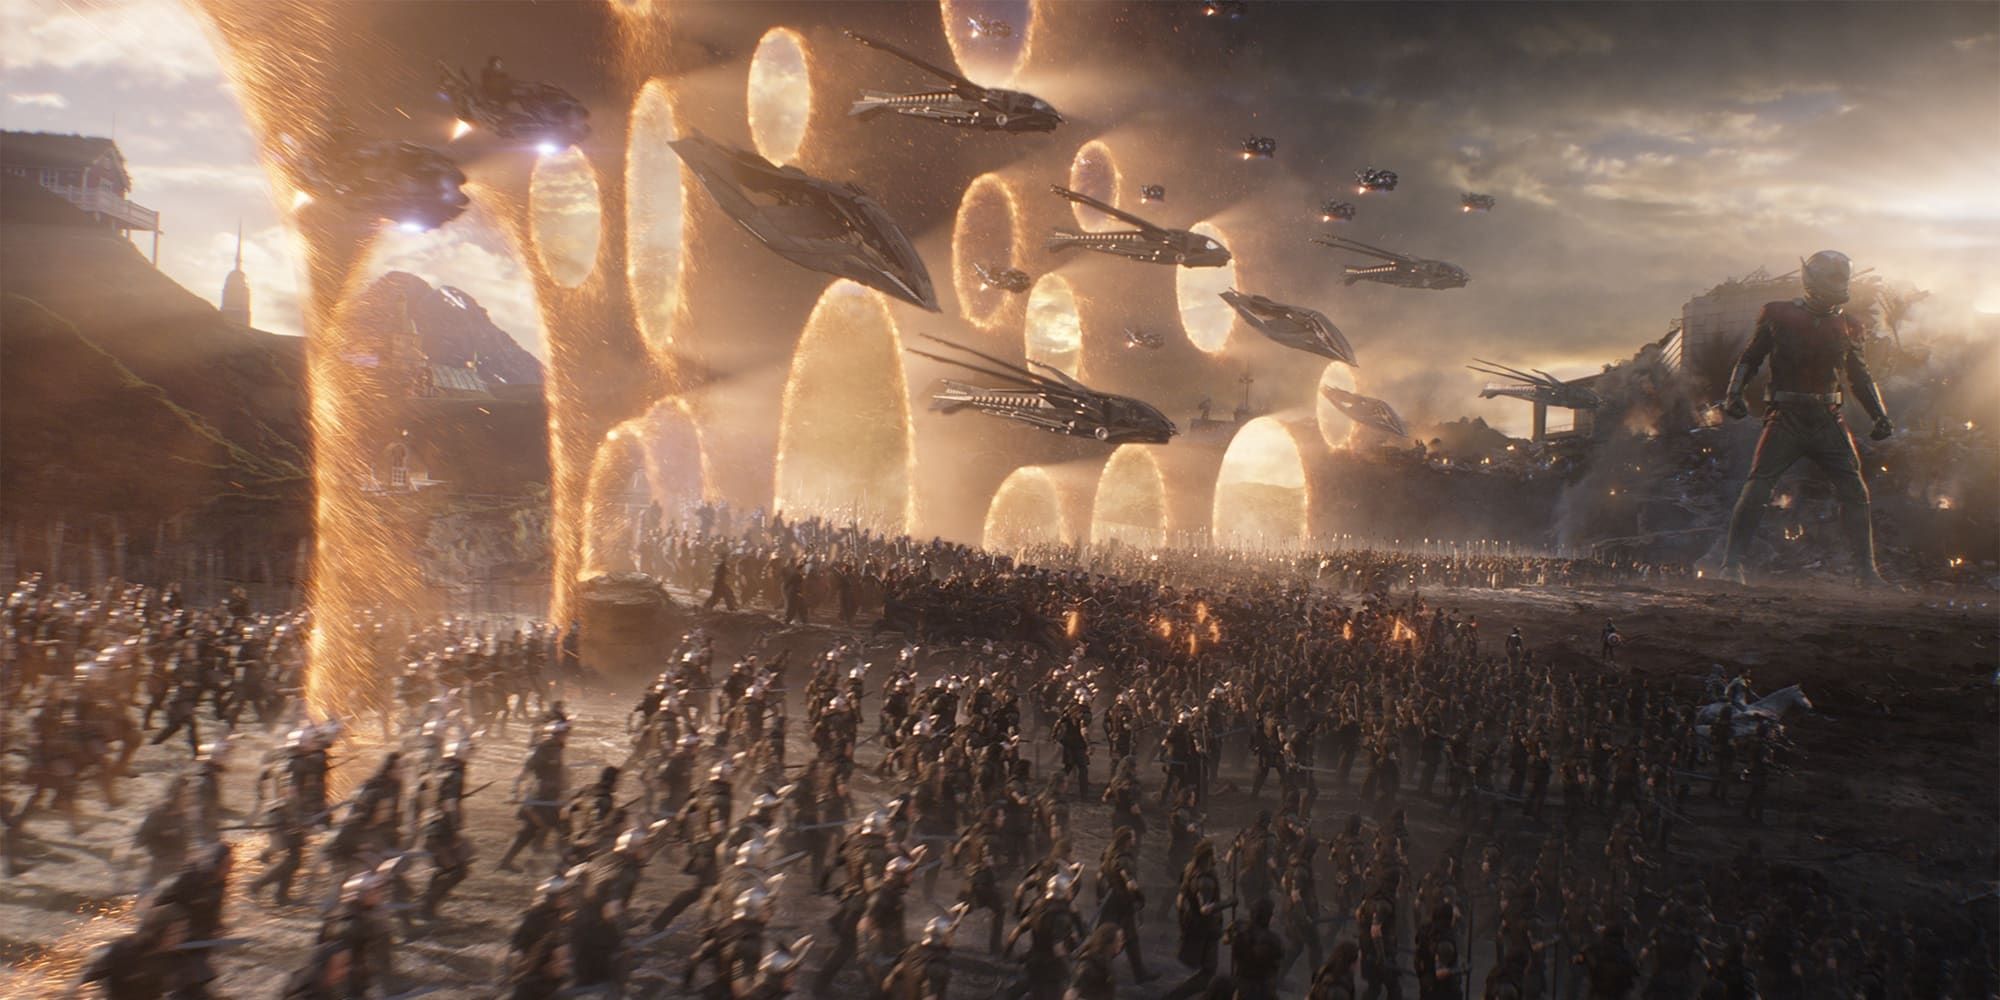 The final battle in Avengers Endgame